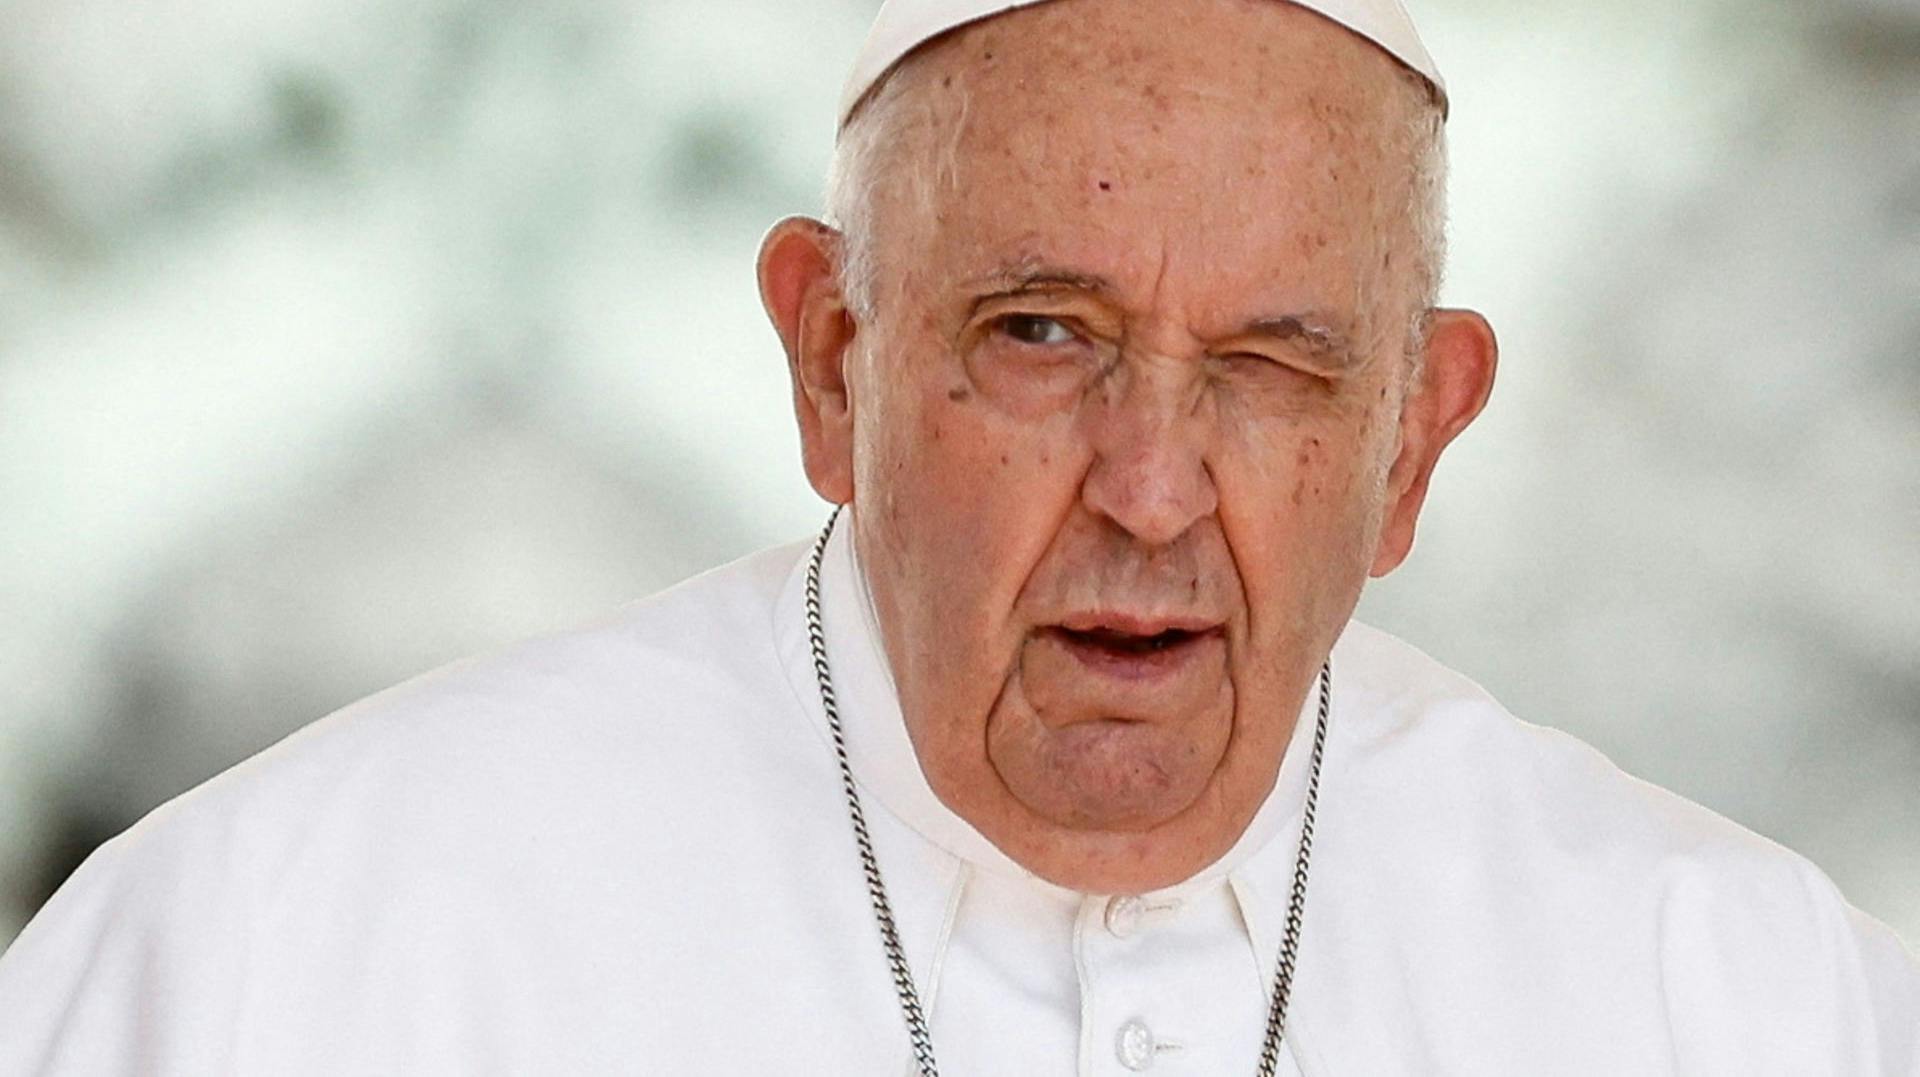 Den 266. i paverækken, 86-årige pave Frans, skal opereres for mavebrok.